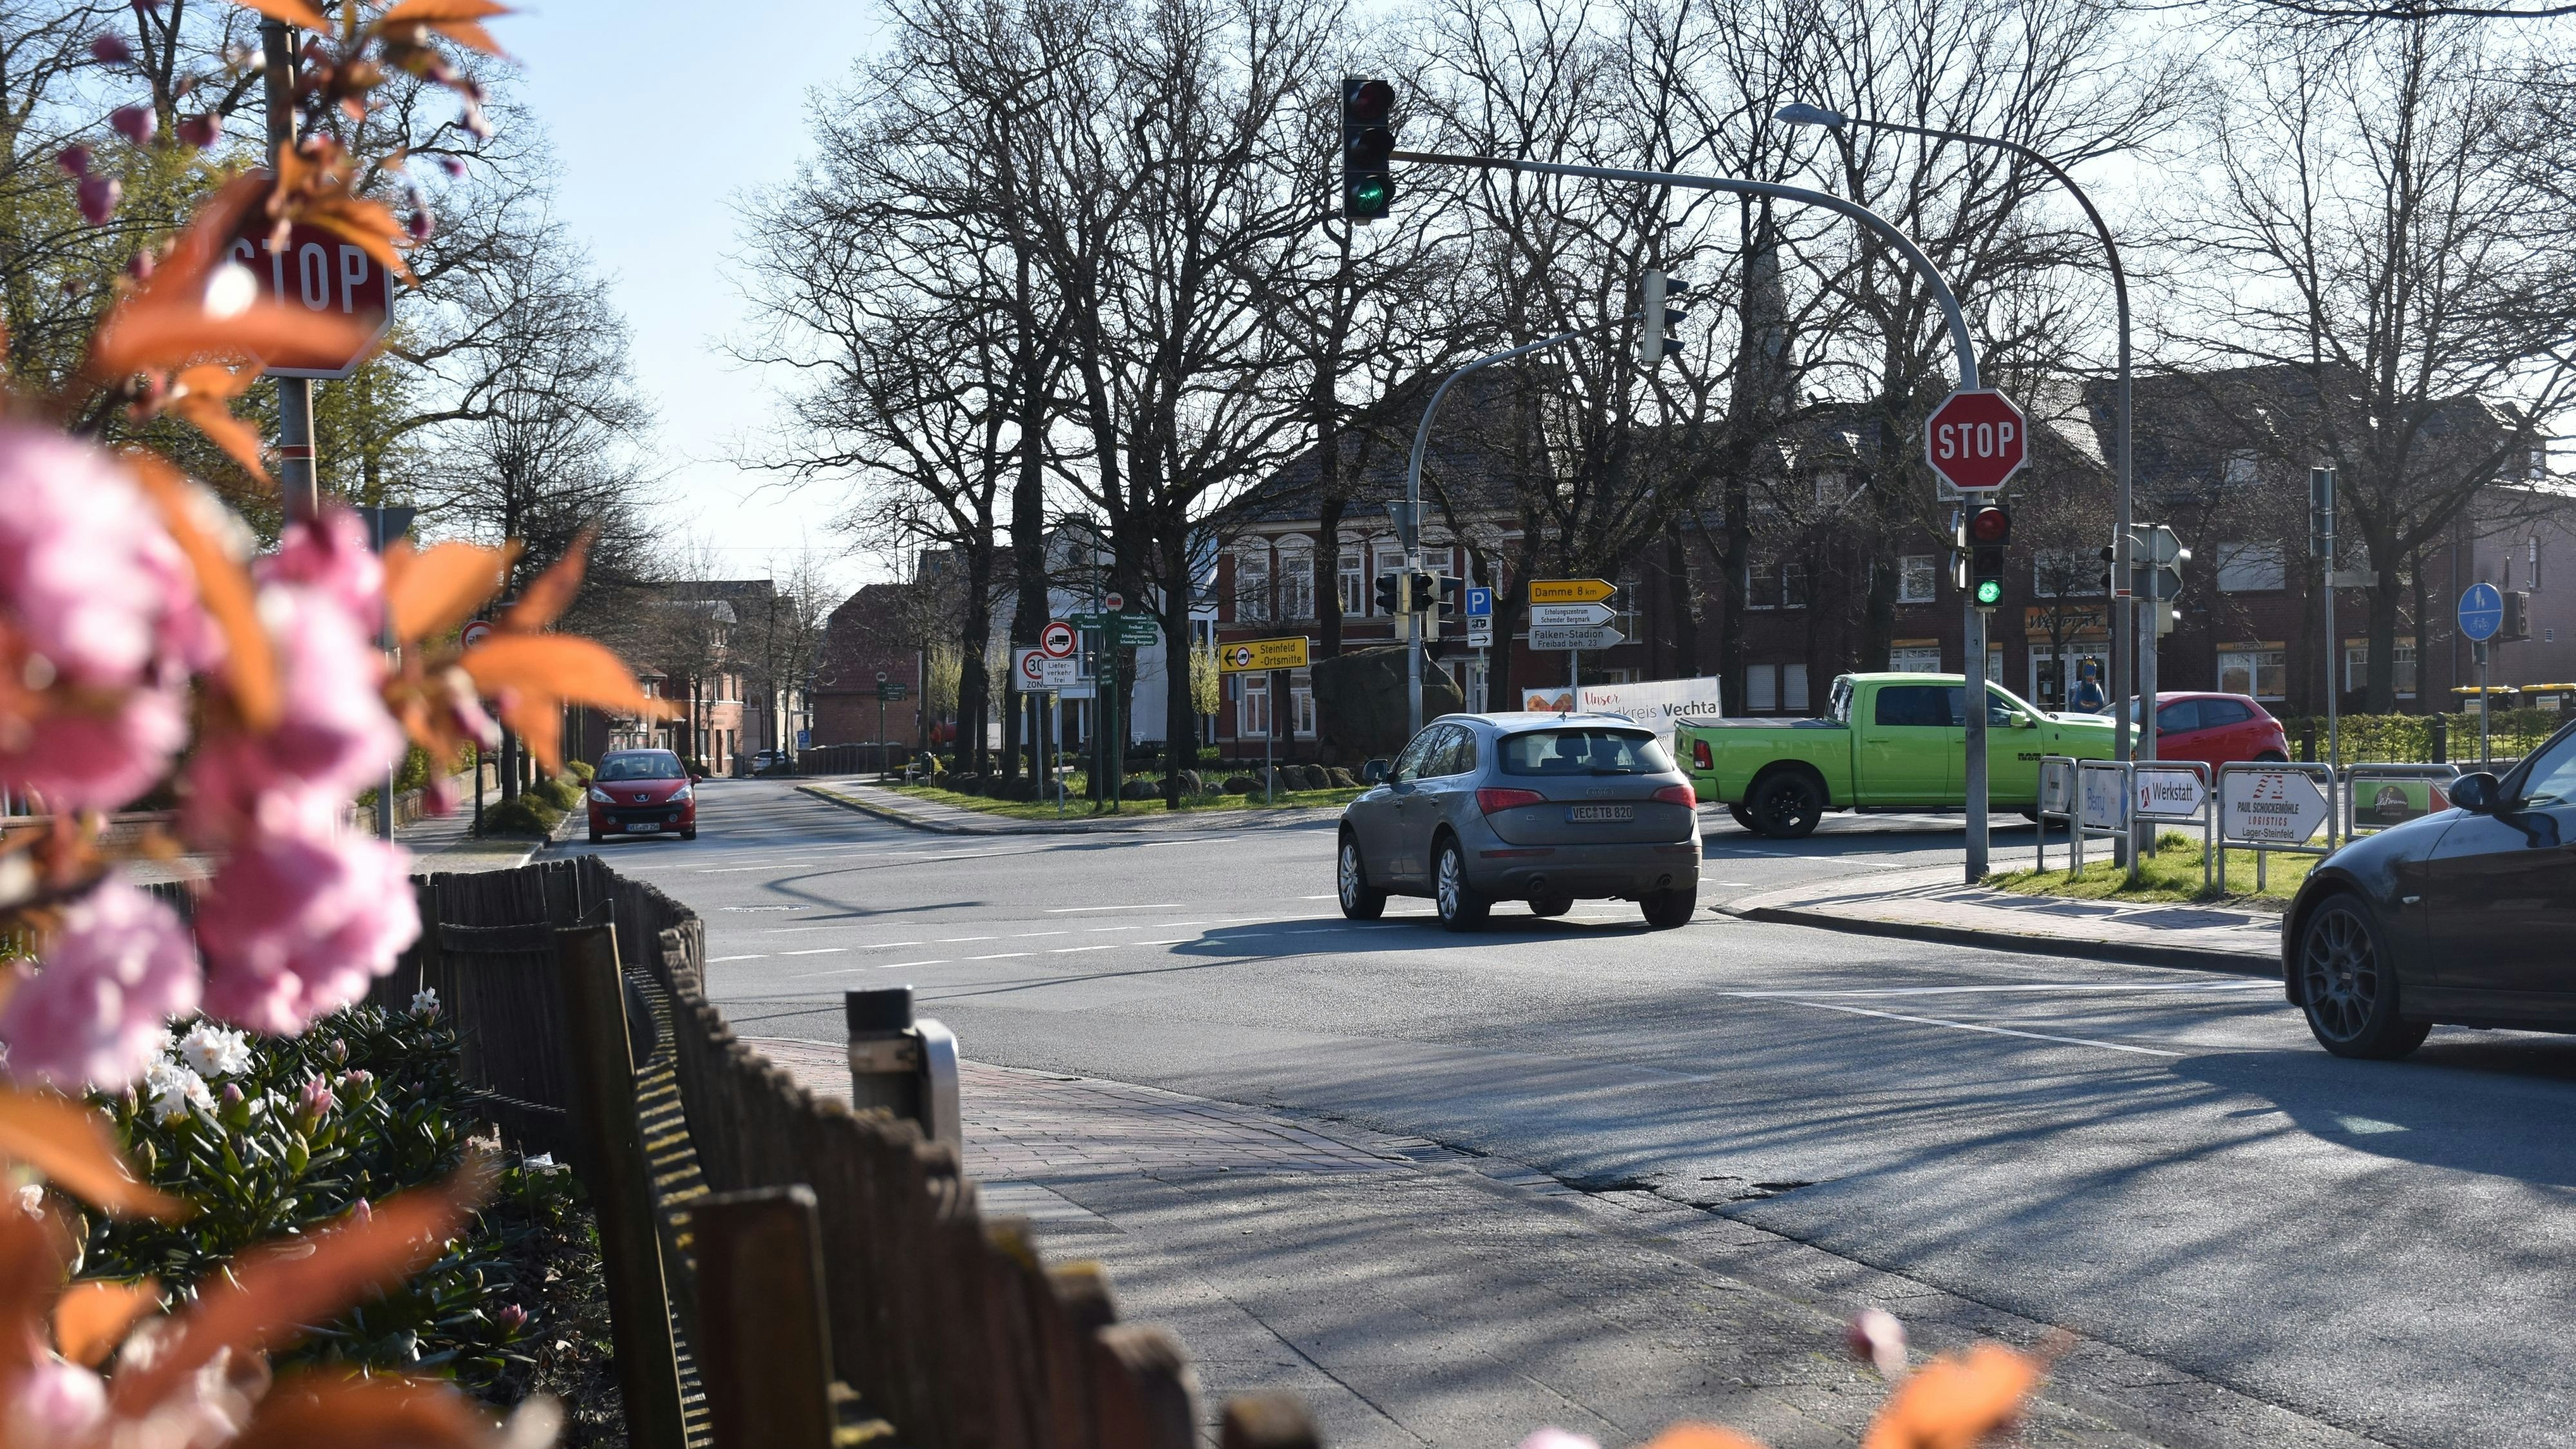 Wieder gab es einen Unfall: Die Kreuzung bleibt ein Problem für Autofahrer und Fußgänger. Foto: Timphaus